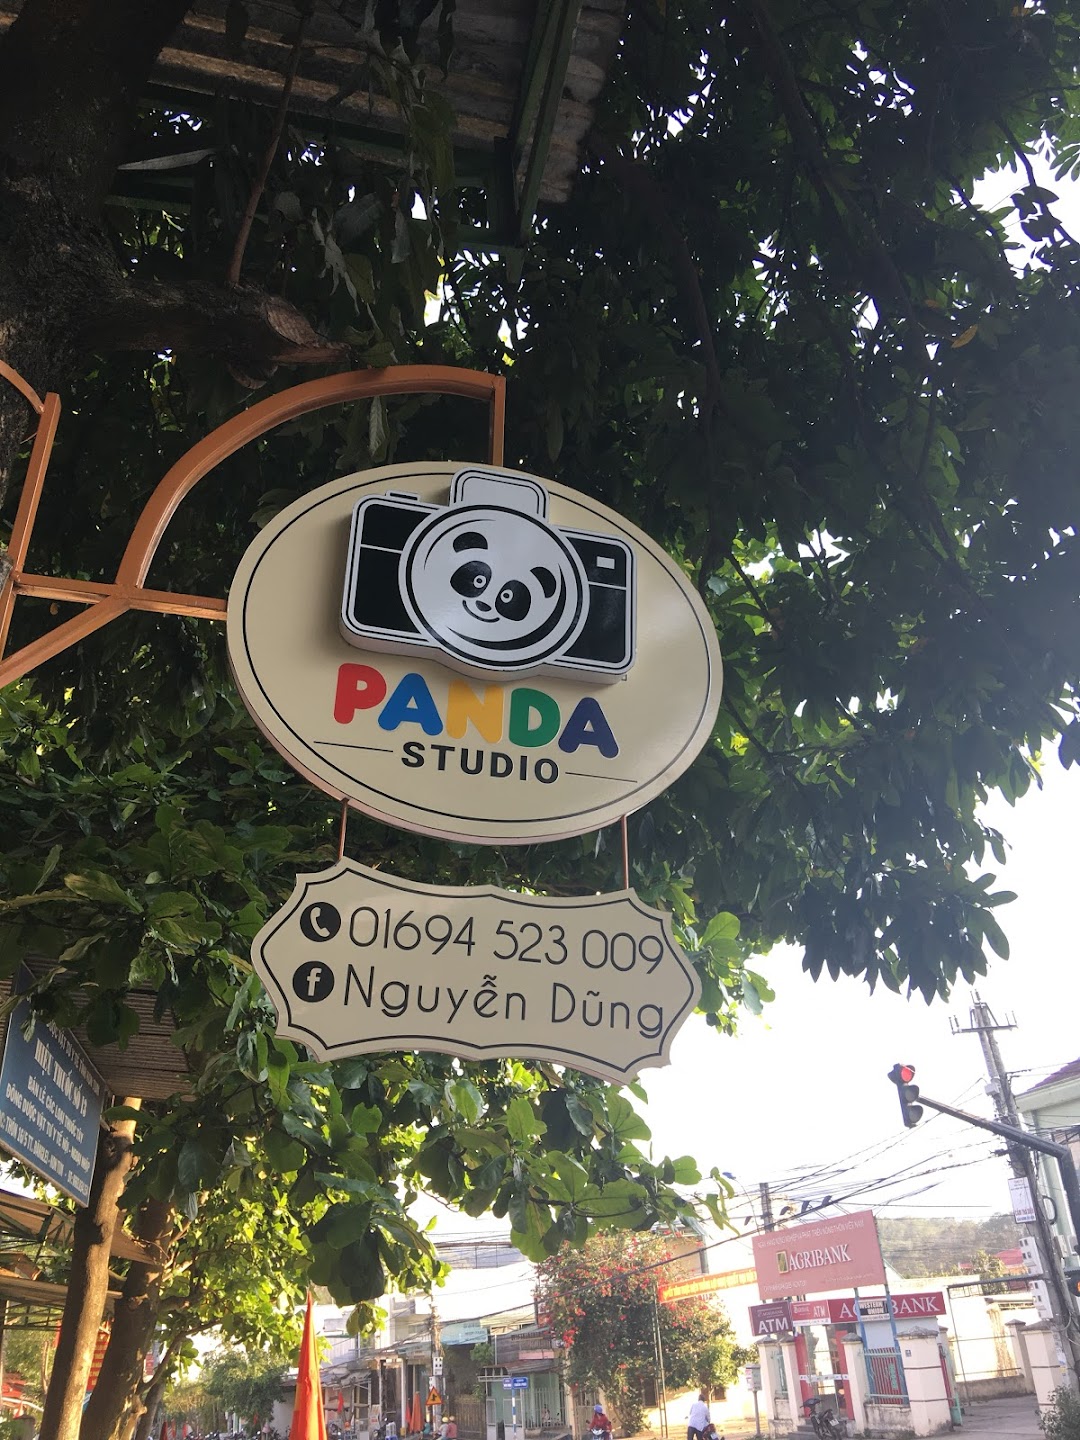 Panda-Studio